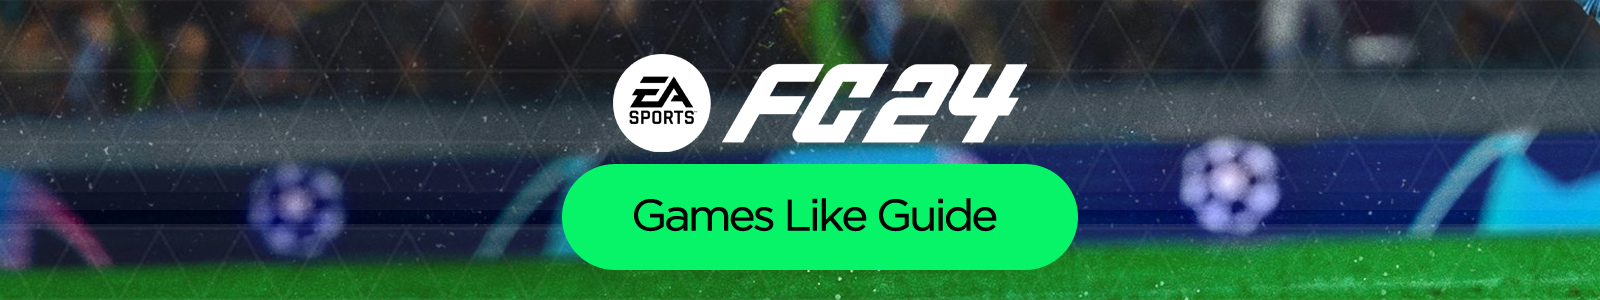 EA Sports FC 24 - PS4 / PlayStation 4 - Neu & OVP - EU Version